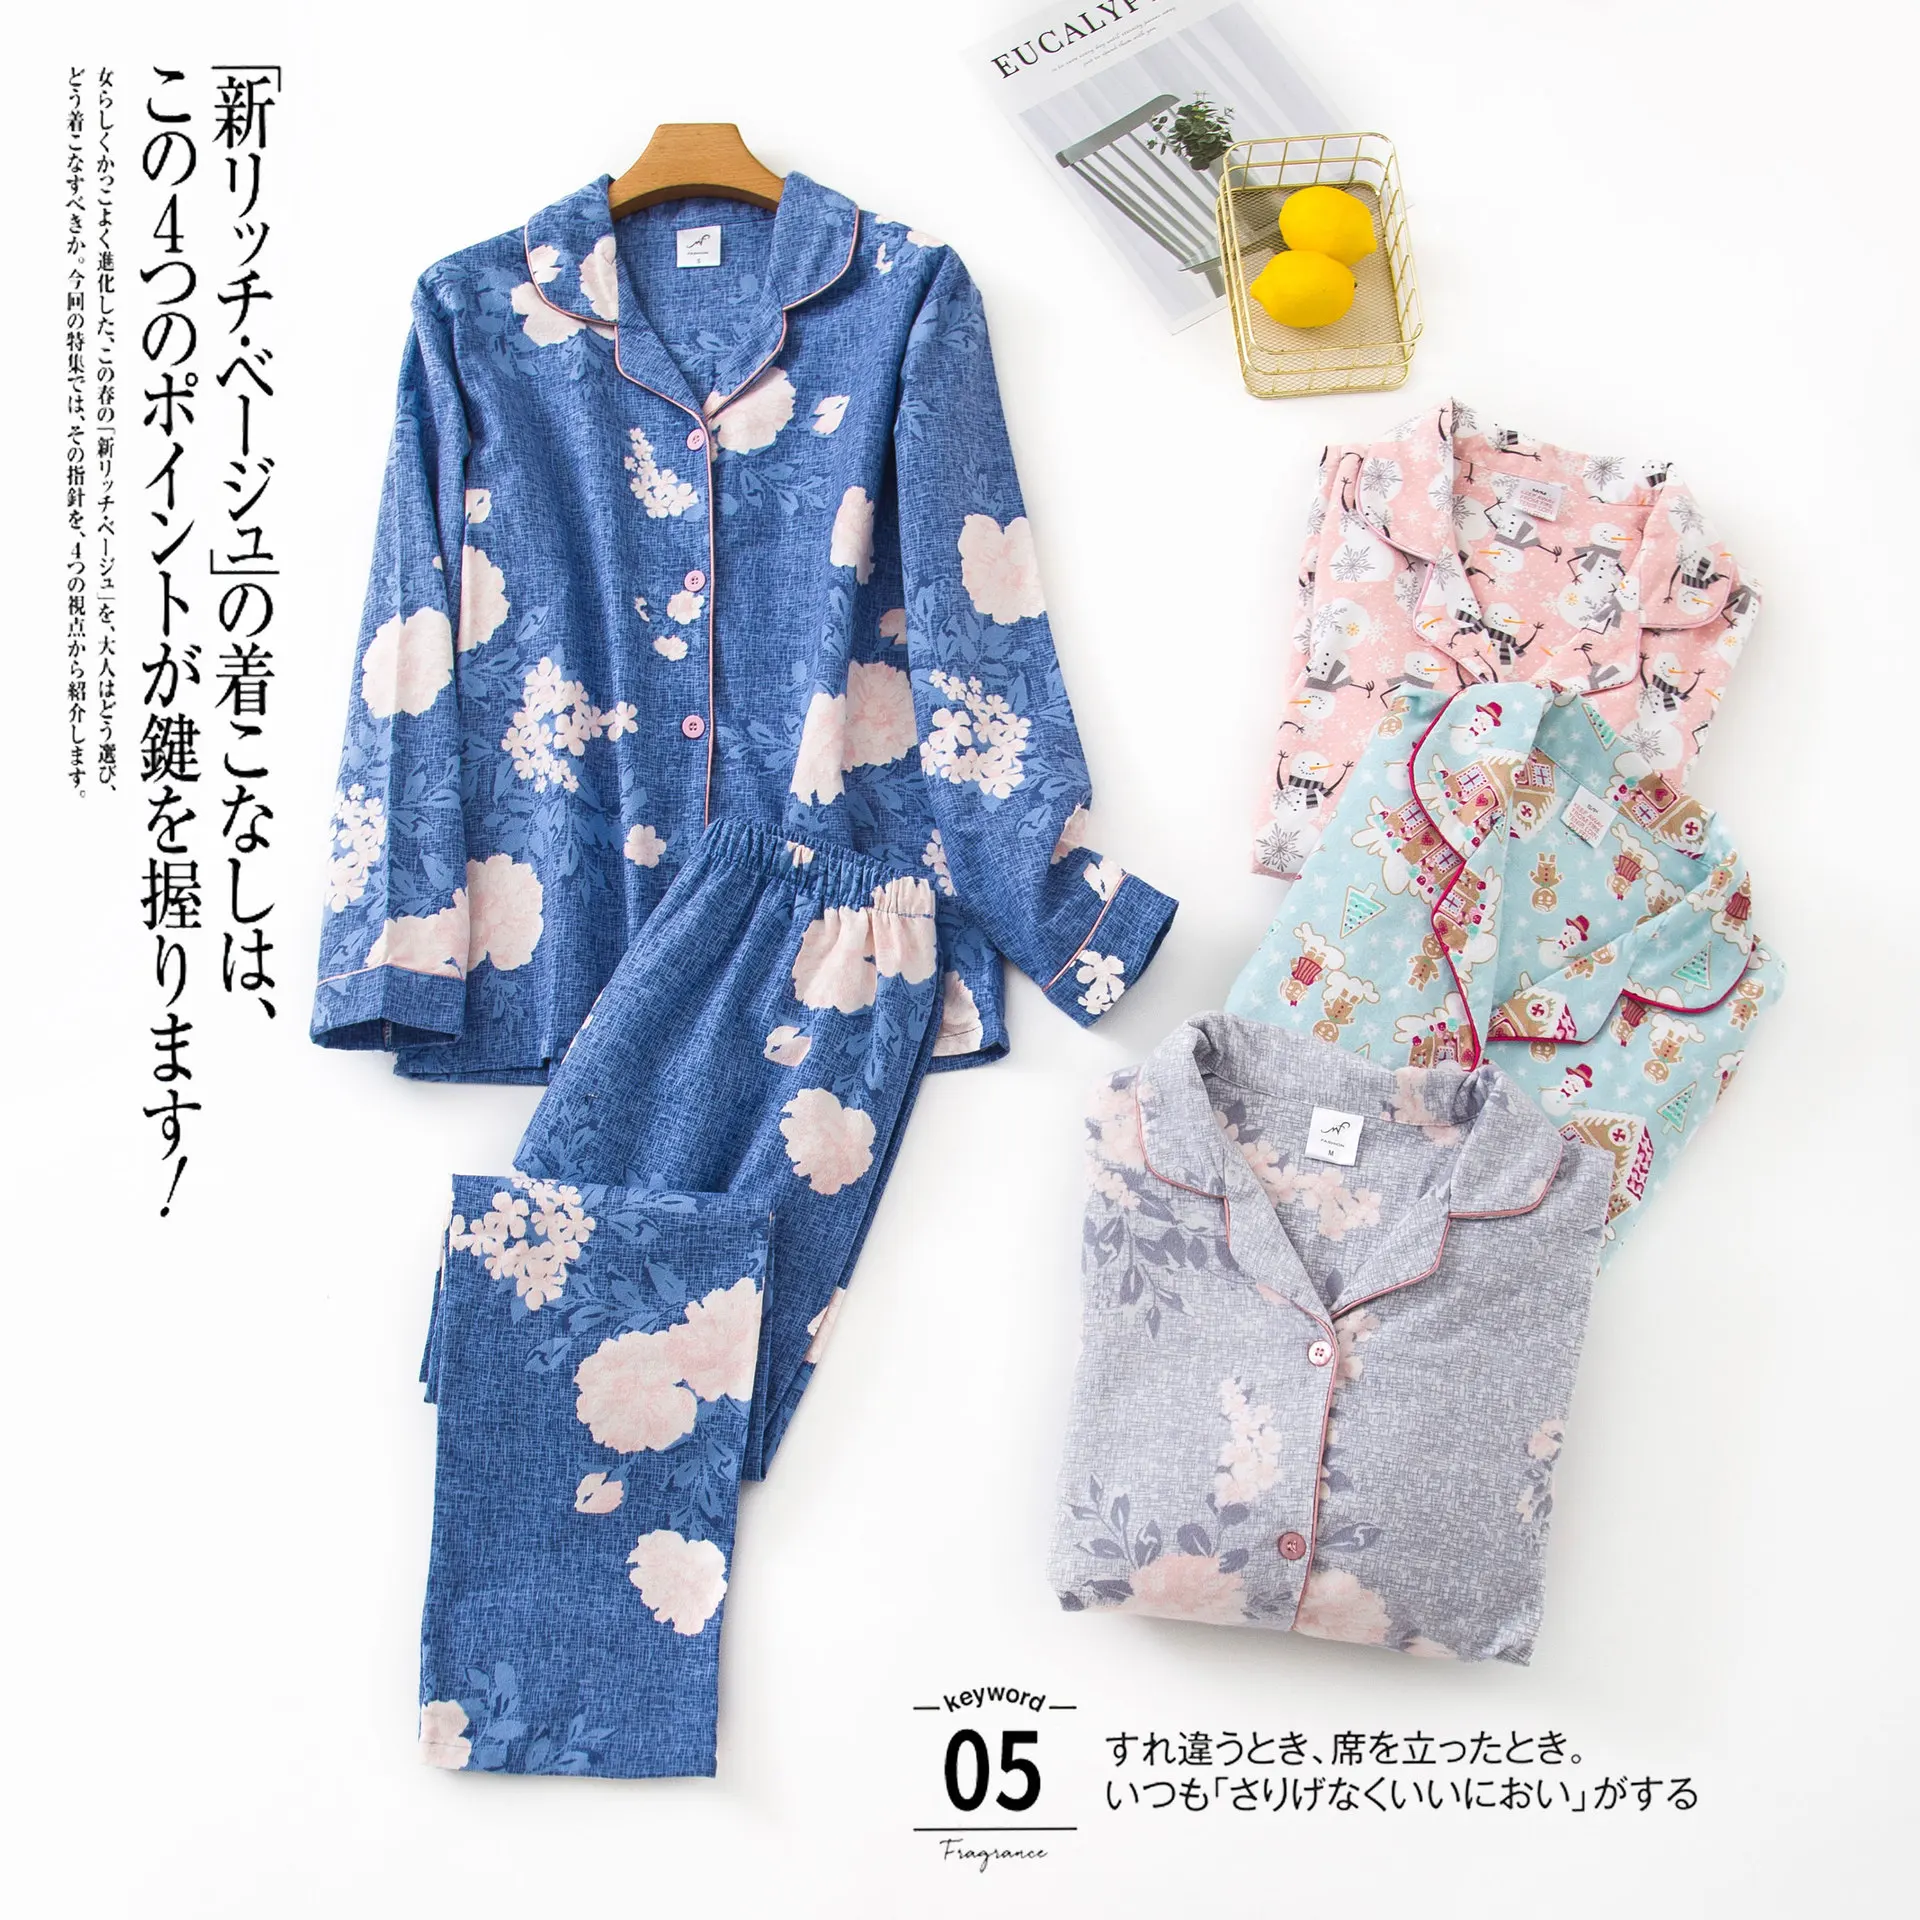 

100% Cotton Long Sleeve Pyjamas Winter Pajamas Noble Retro Leisure Loose Printing Sleepwear Loungewear Homewear for Women Pj Set